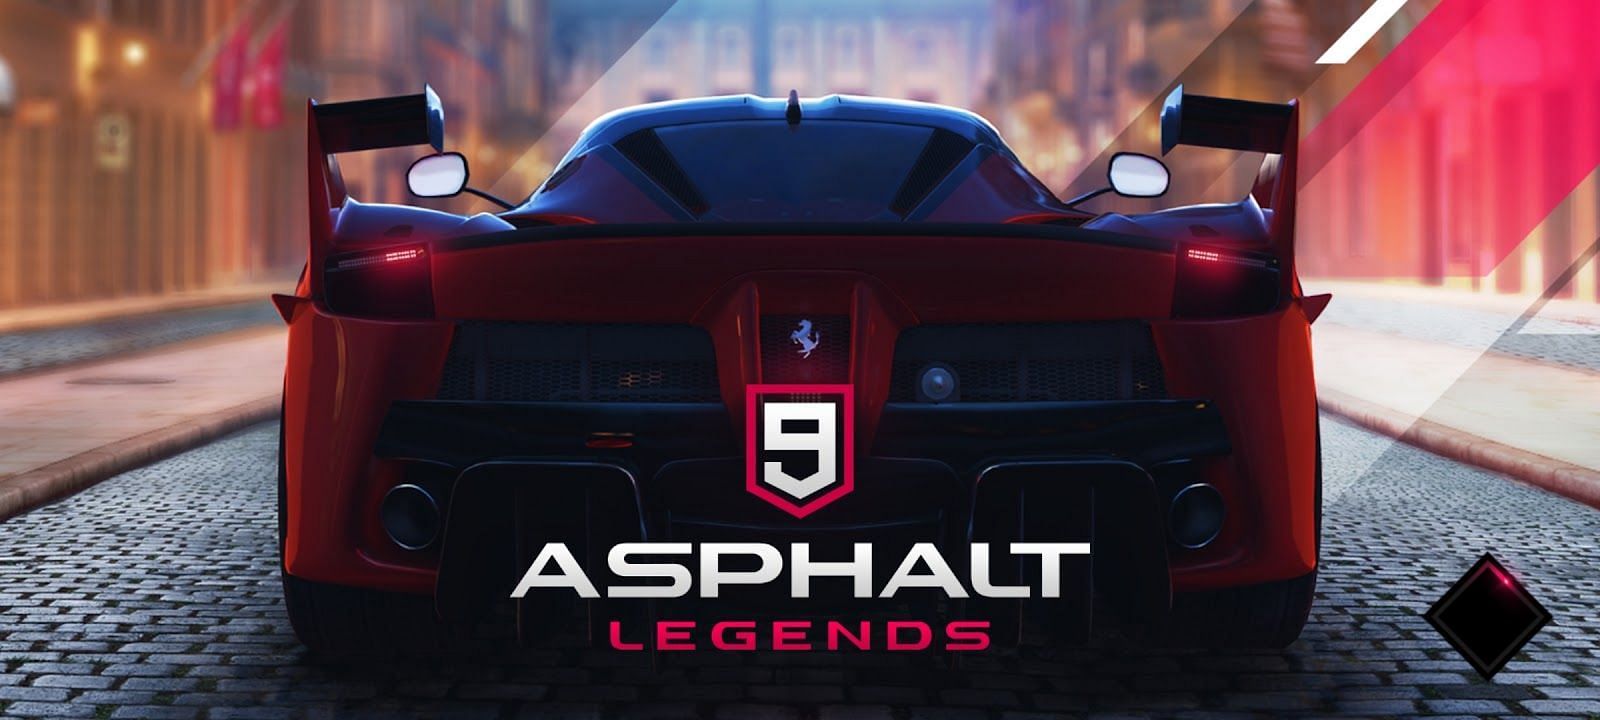 Asphalt 9: Legends (Image via Gameloft)